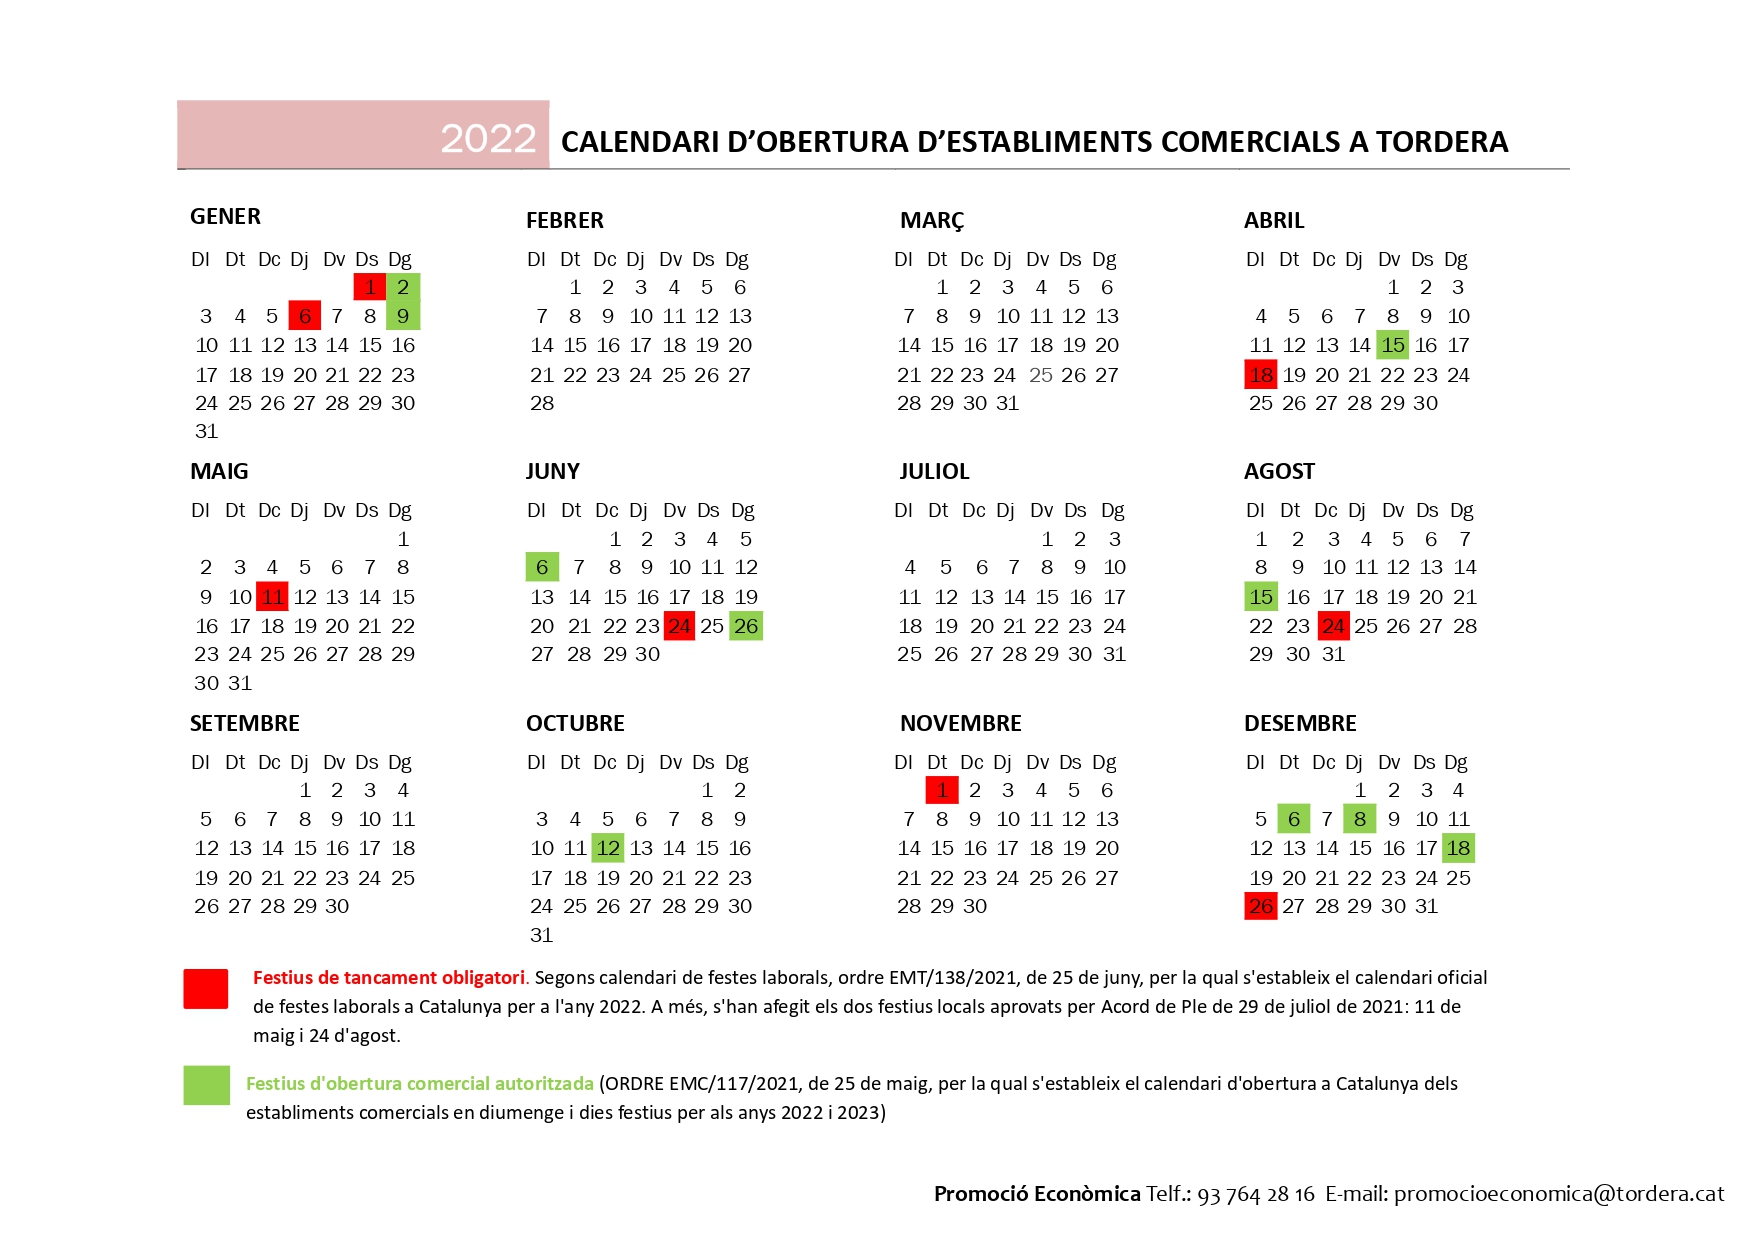 Calendari d'obertura d'establiments comercials a Tordera 2022